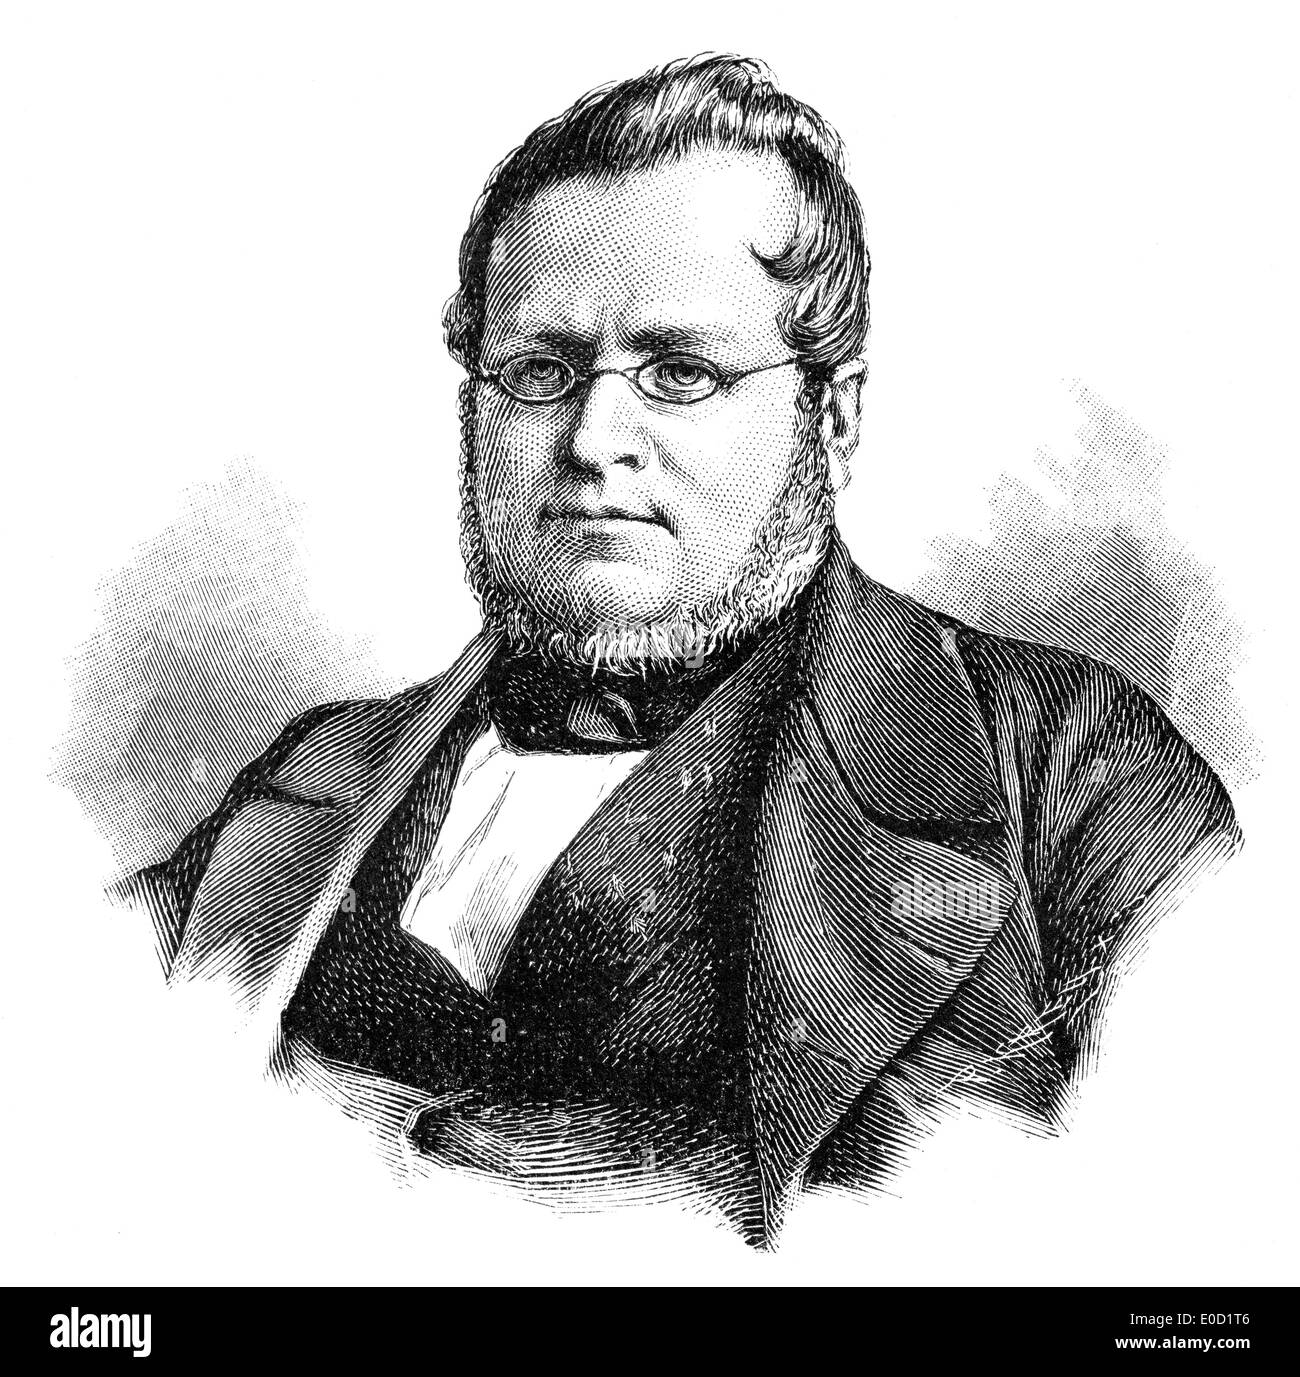 Camillo Paolo Filippo Giulio Benso, Graf von Cavour, 1810-1861, ein italienischer Staatsmann, erster Ministerpräsident Italiens Stockfoto